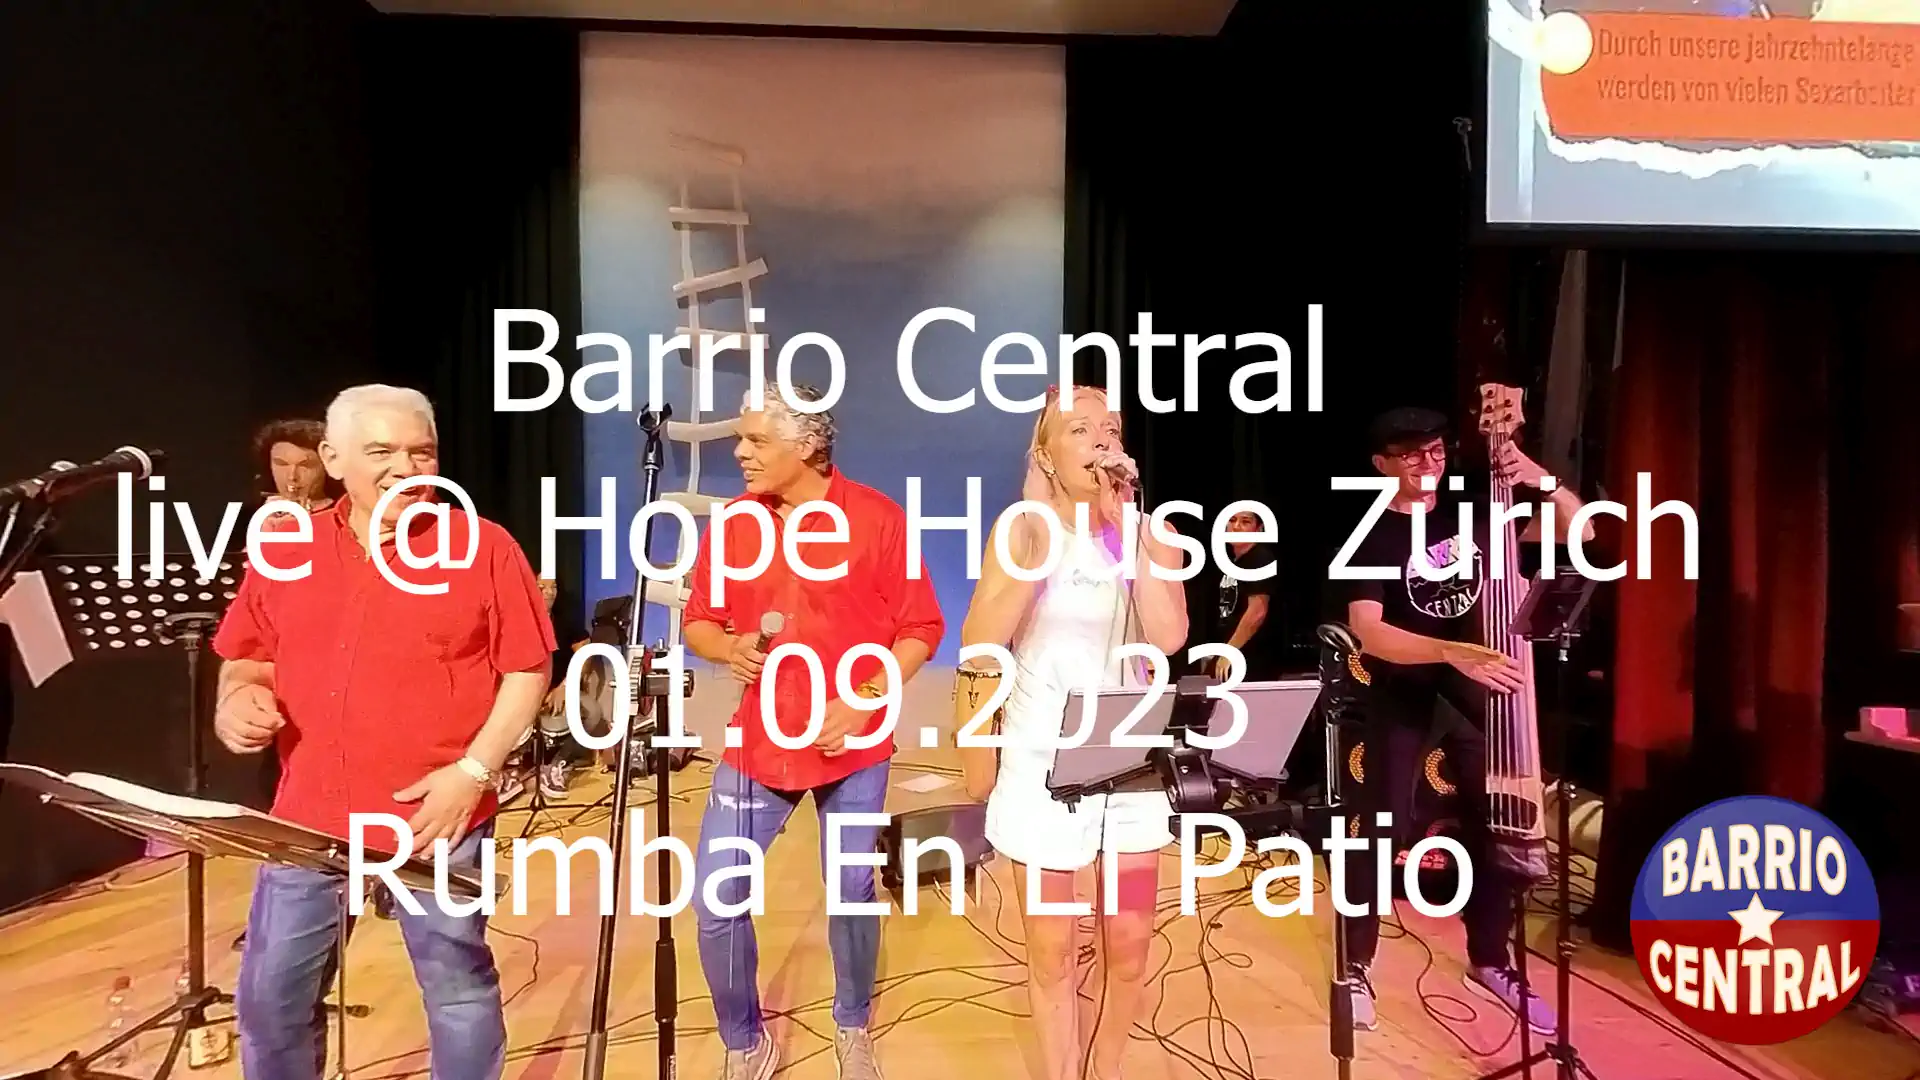 barrio central salsaband hope house Zuerich